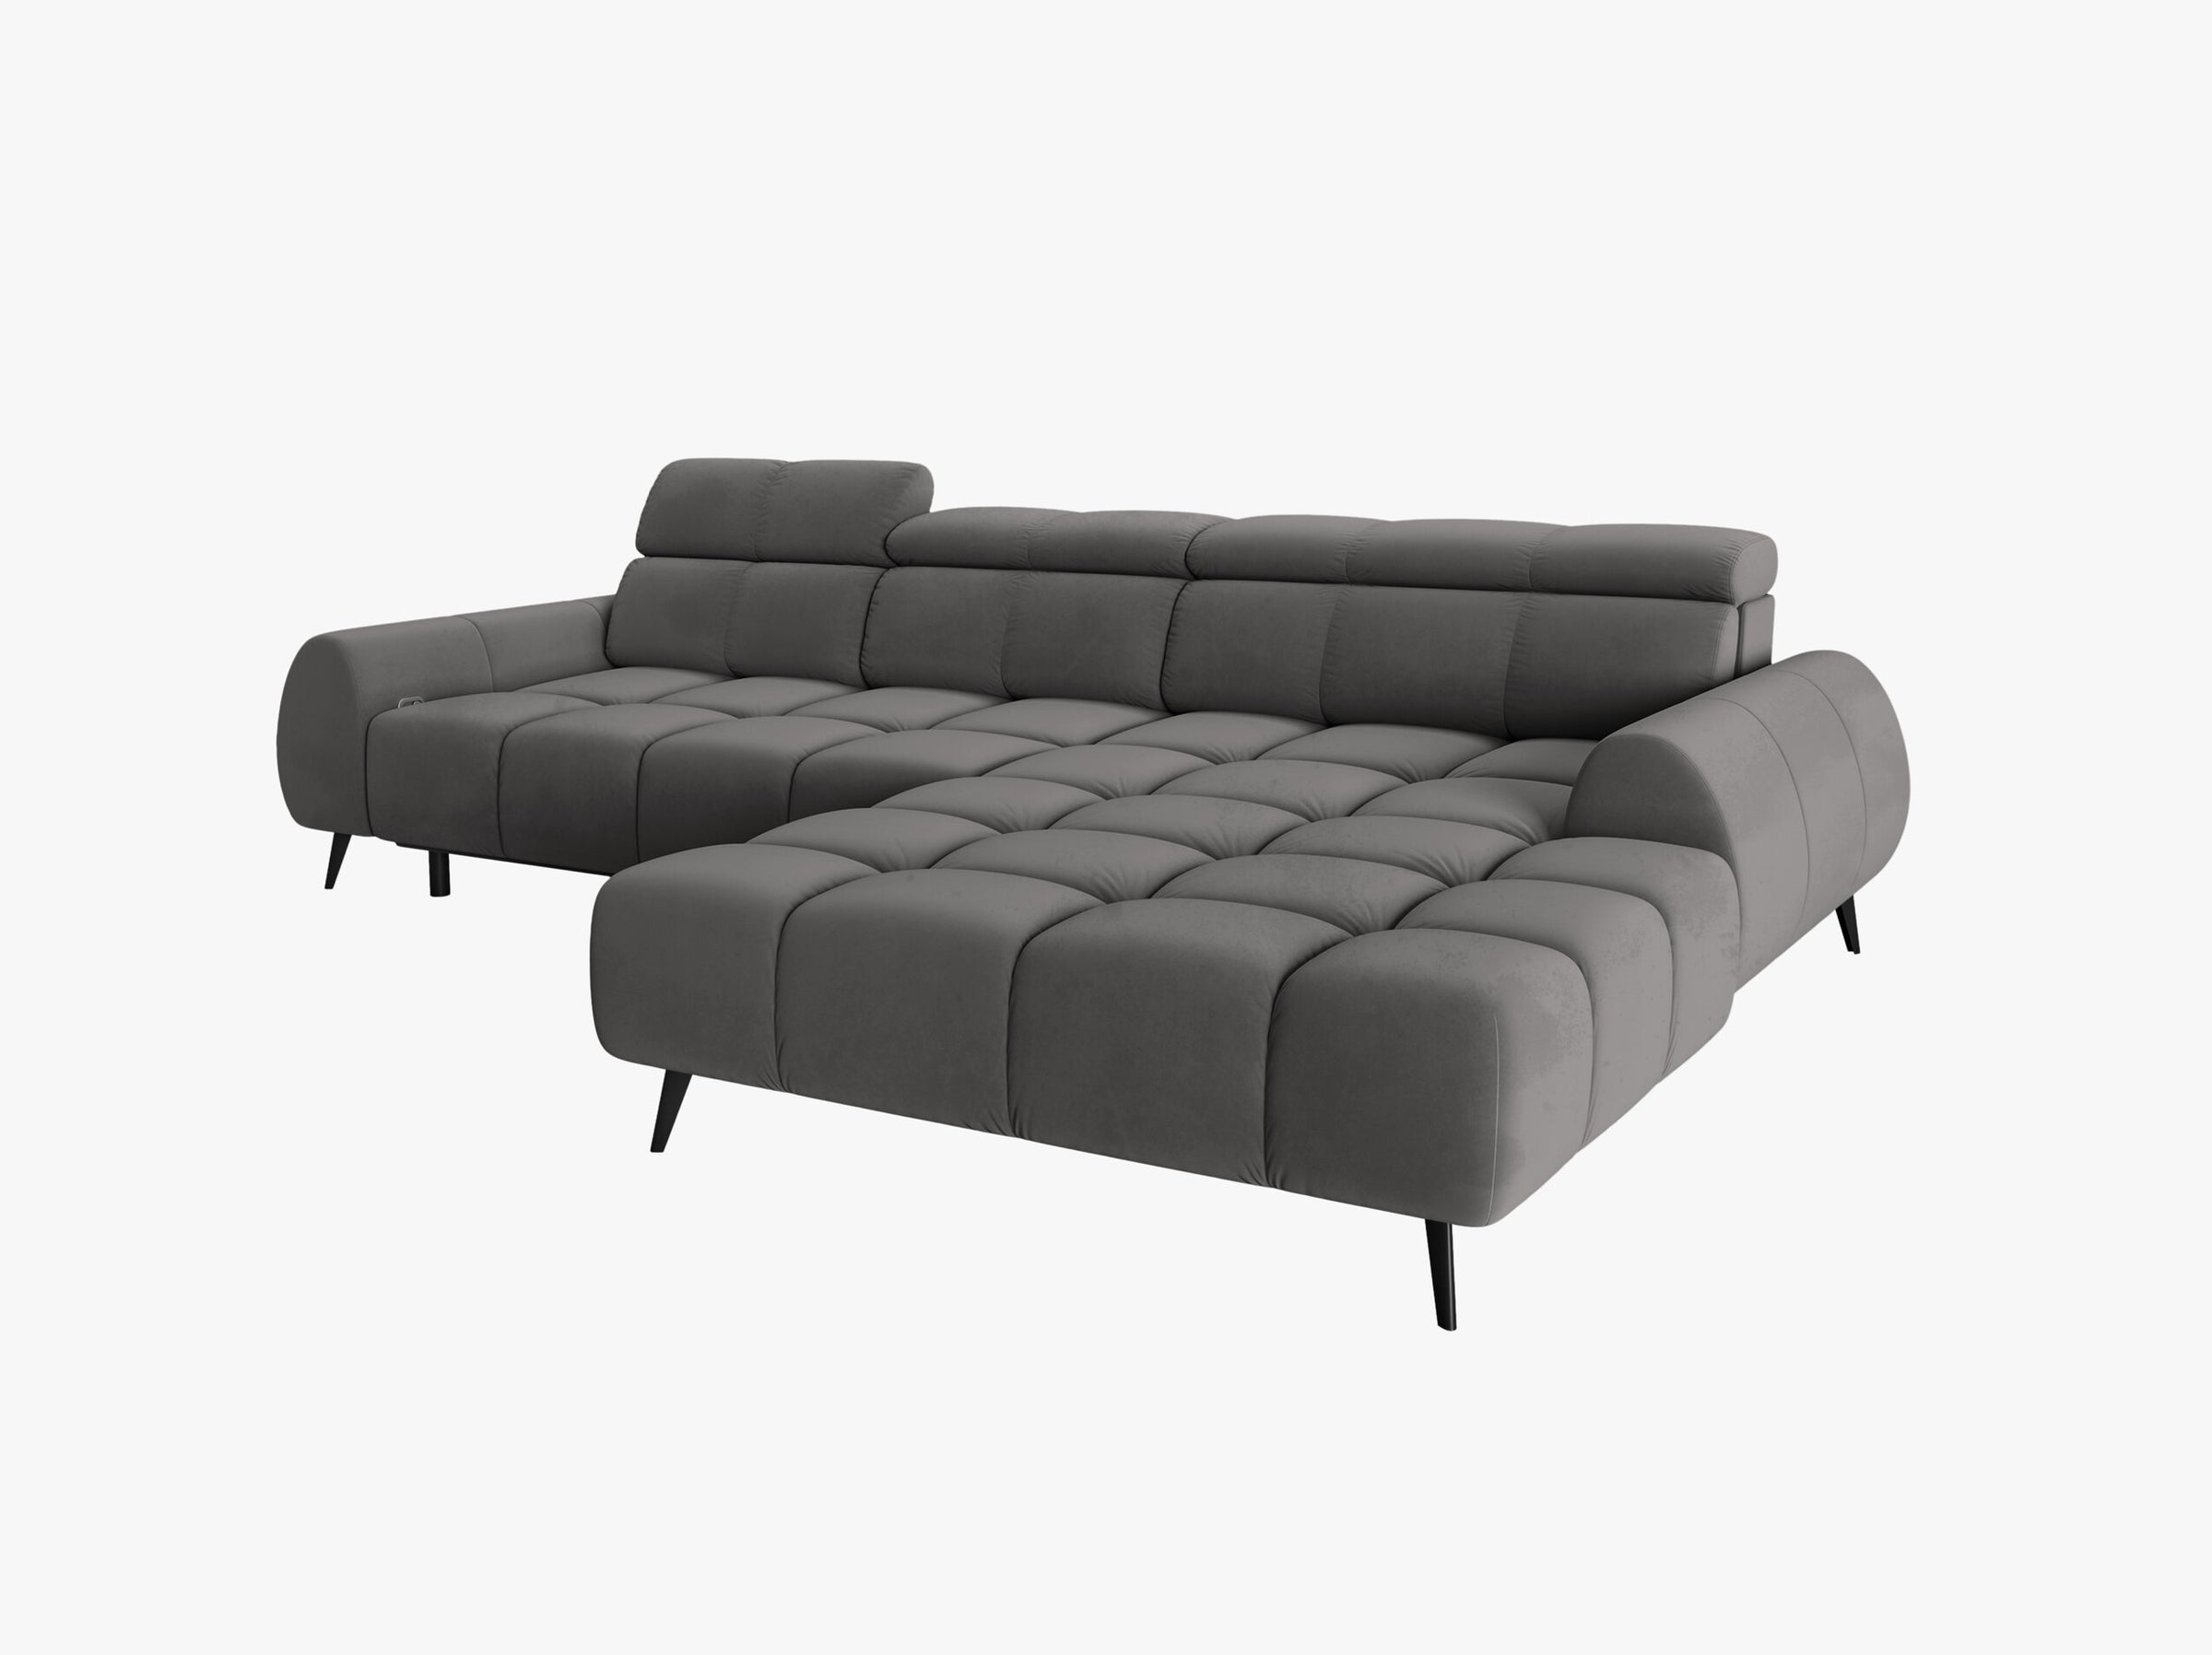 Alyse sofas velvet light grey